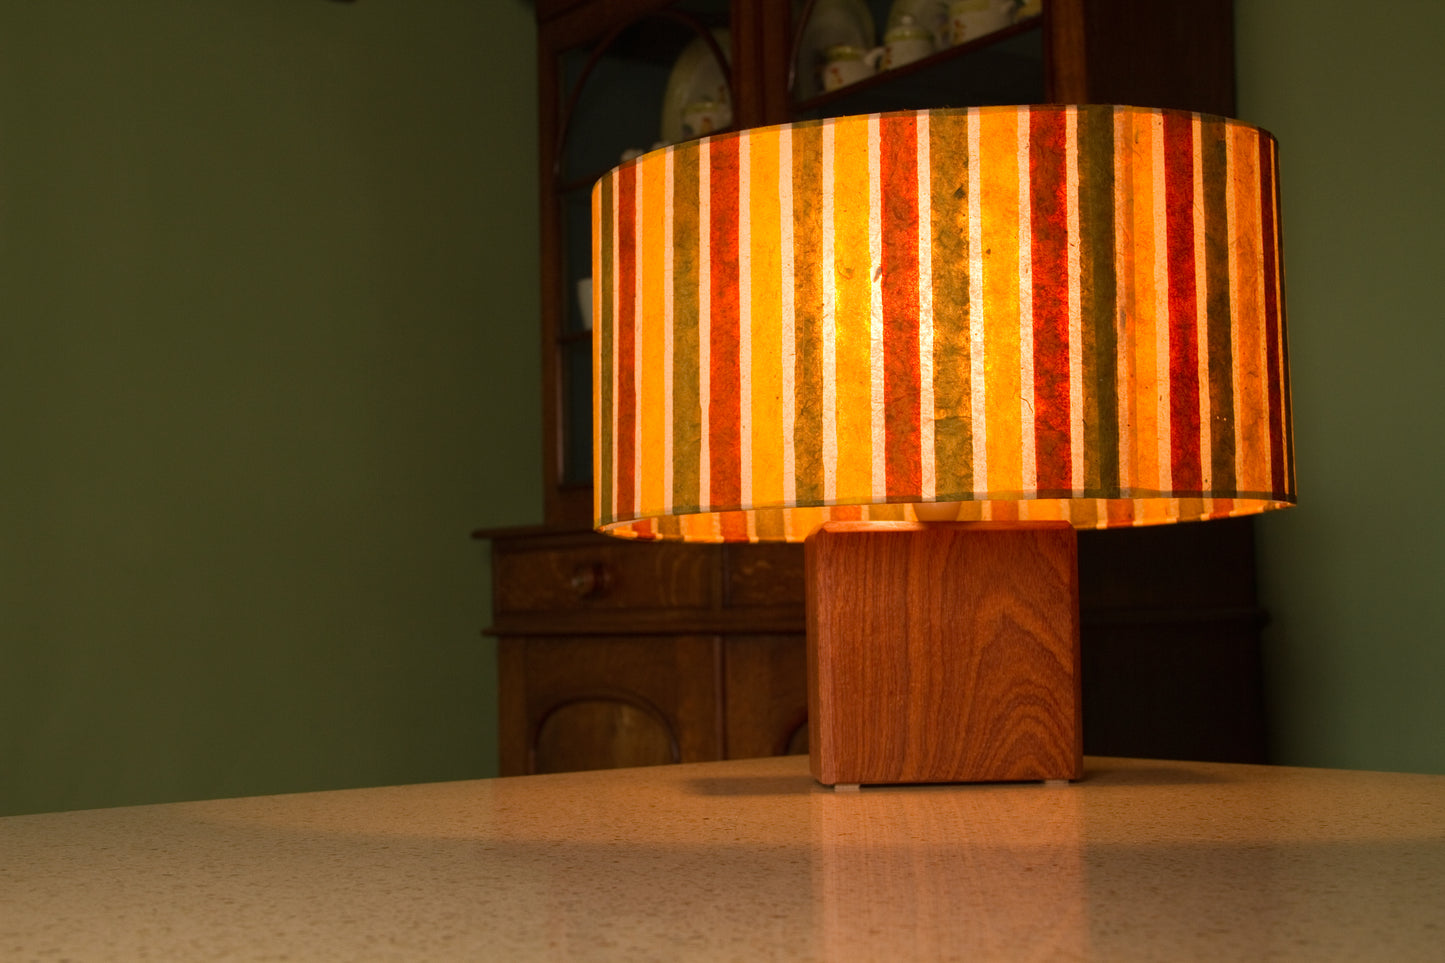 Oval Lamp Shade - P06 - Batik Stripes Autumn, 40cm(w) x 20cm(h) x 30cm(d)